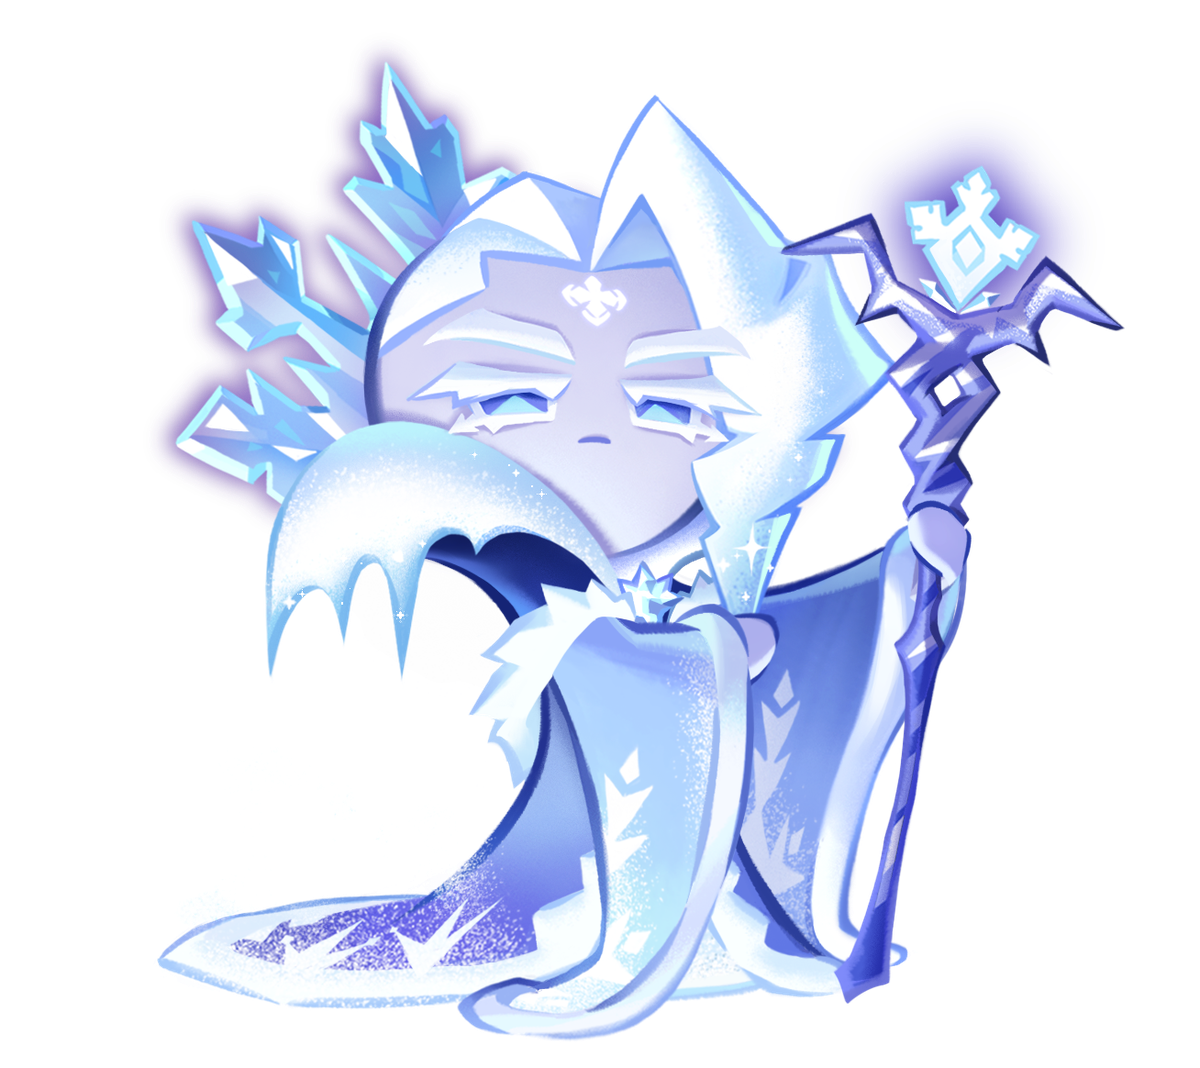 Frost Queen ti guarda dall'alto in basso con i suoi gelidi occhi azzurri.  brandisce un bastone e indossa un mantello fluente.  è stupenda. 